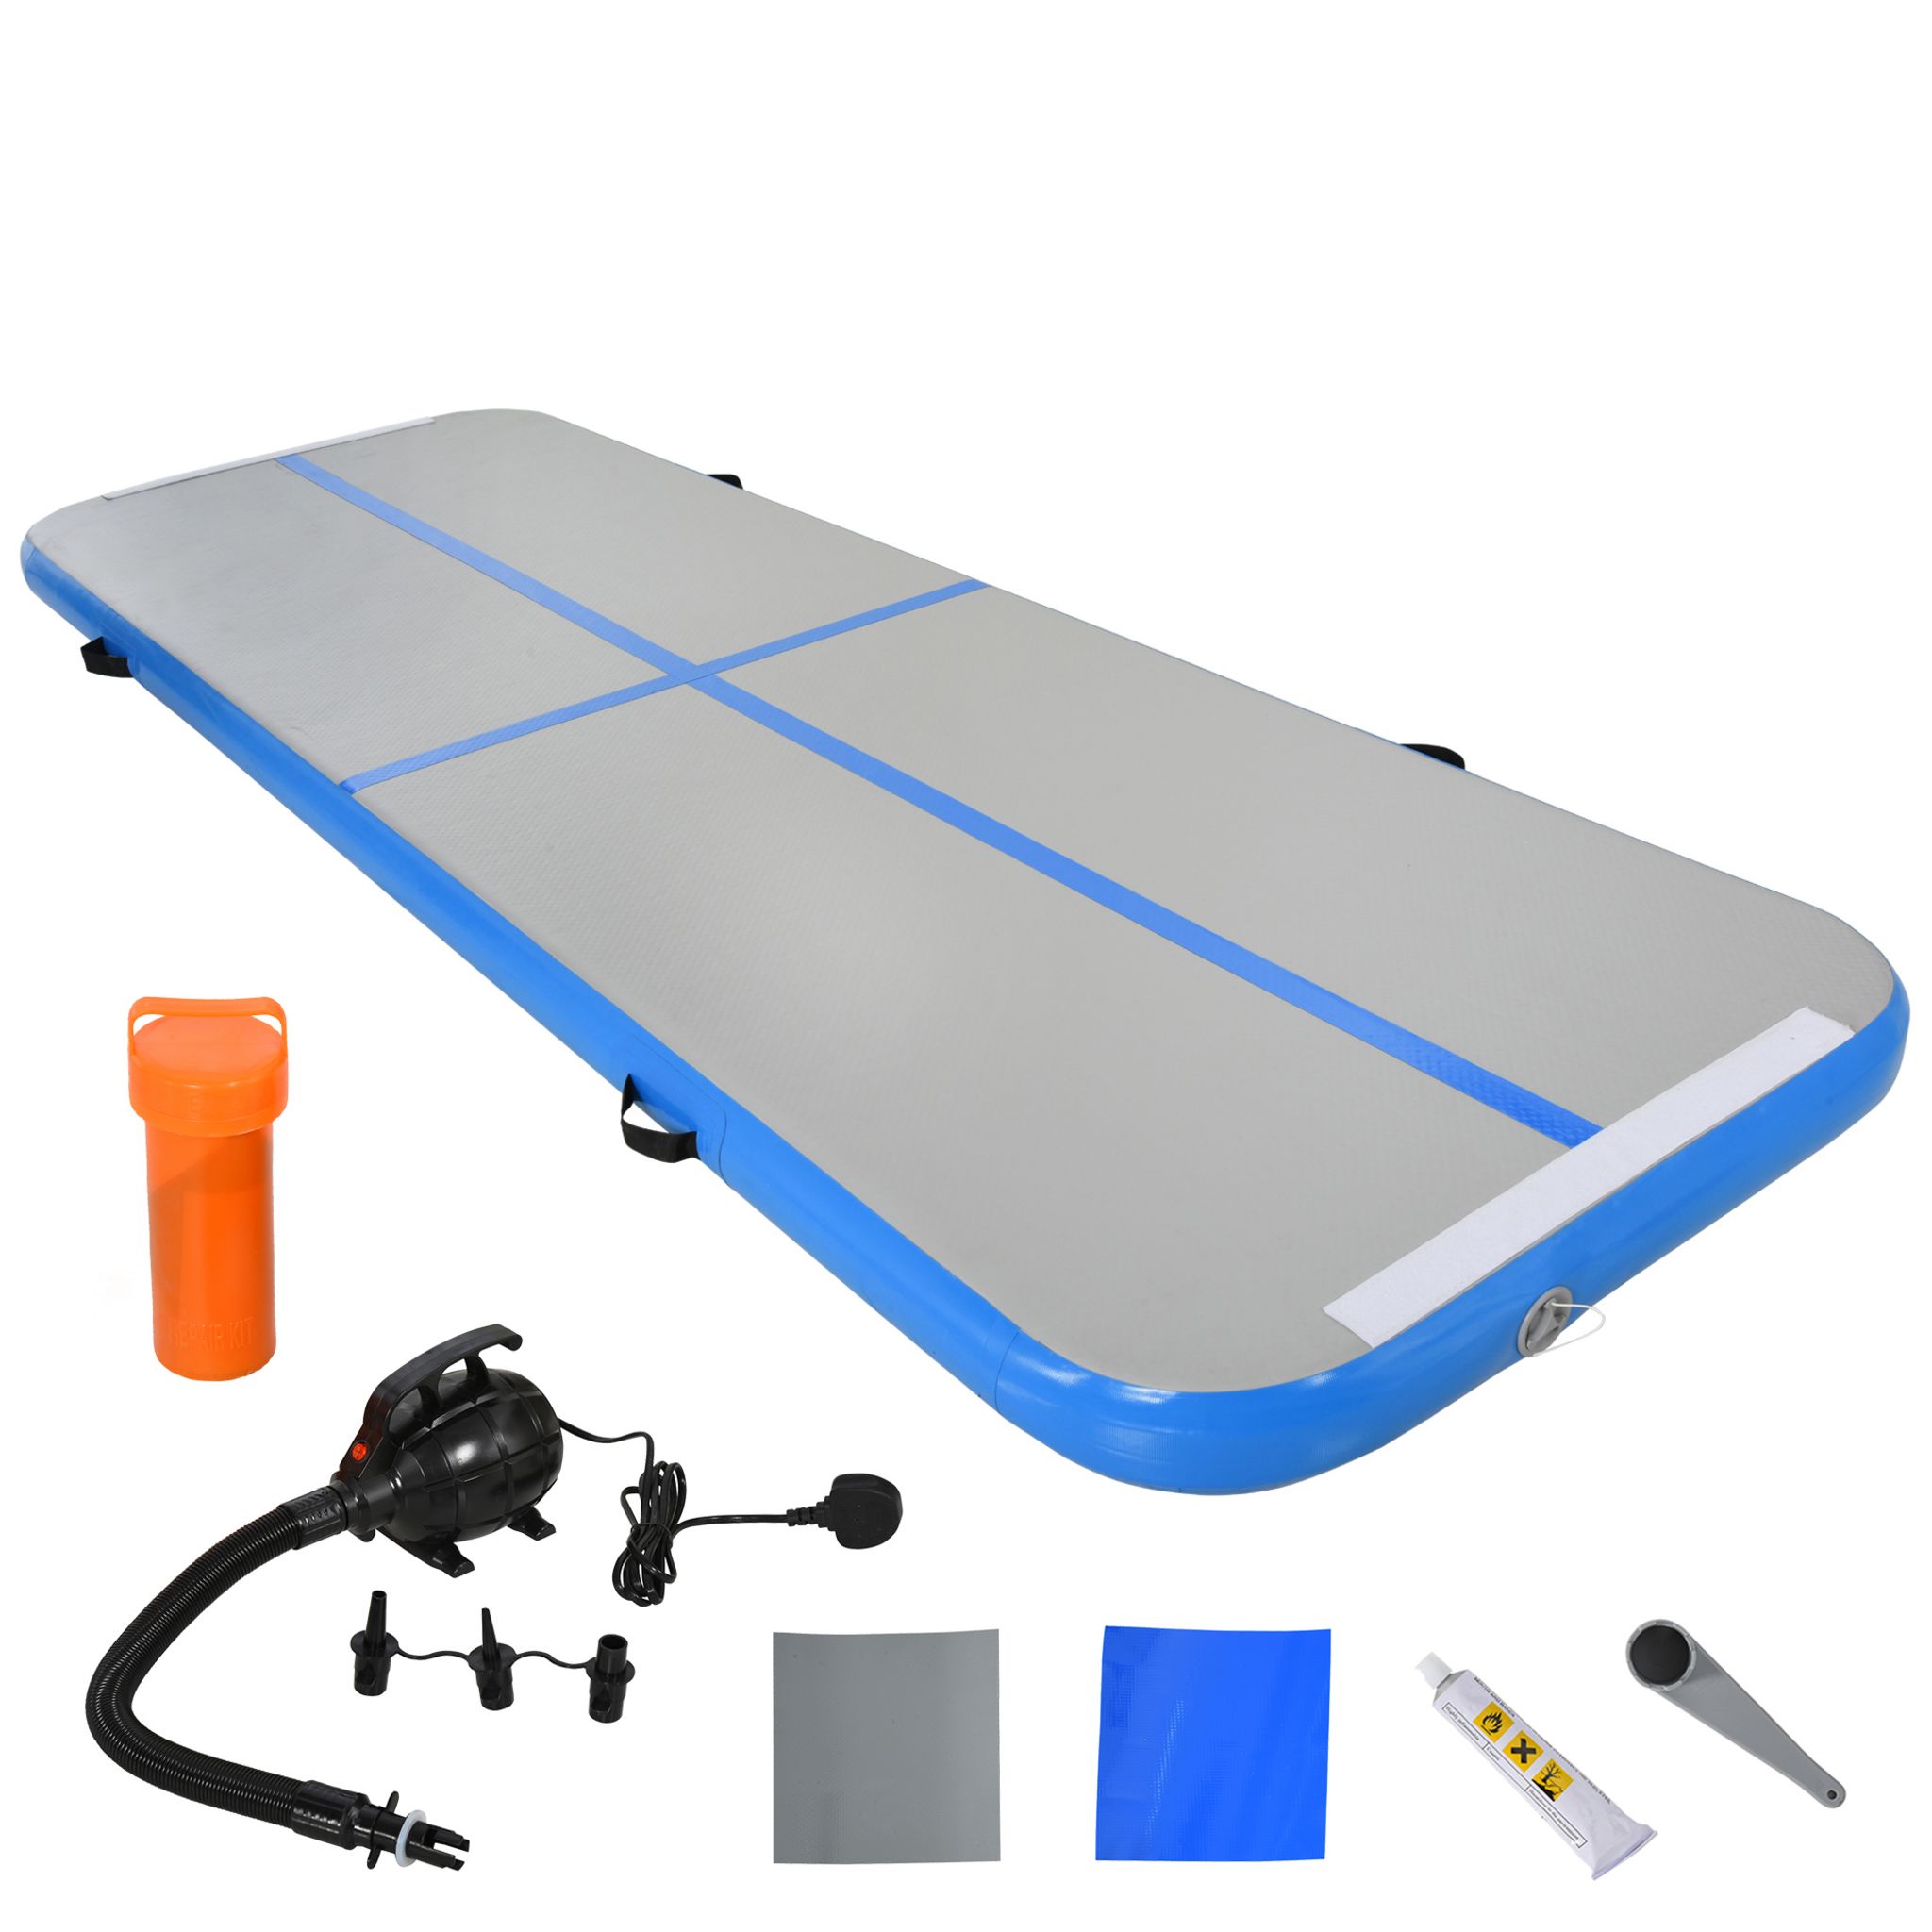 SOLDES 2024 : Tapis de sol gymnastique Fitness pliable portable rembourrage  mousse 5 cm grand confort revêtement synthétique dim. 2,93L m x 1,15l m  bleu pas cher